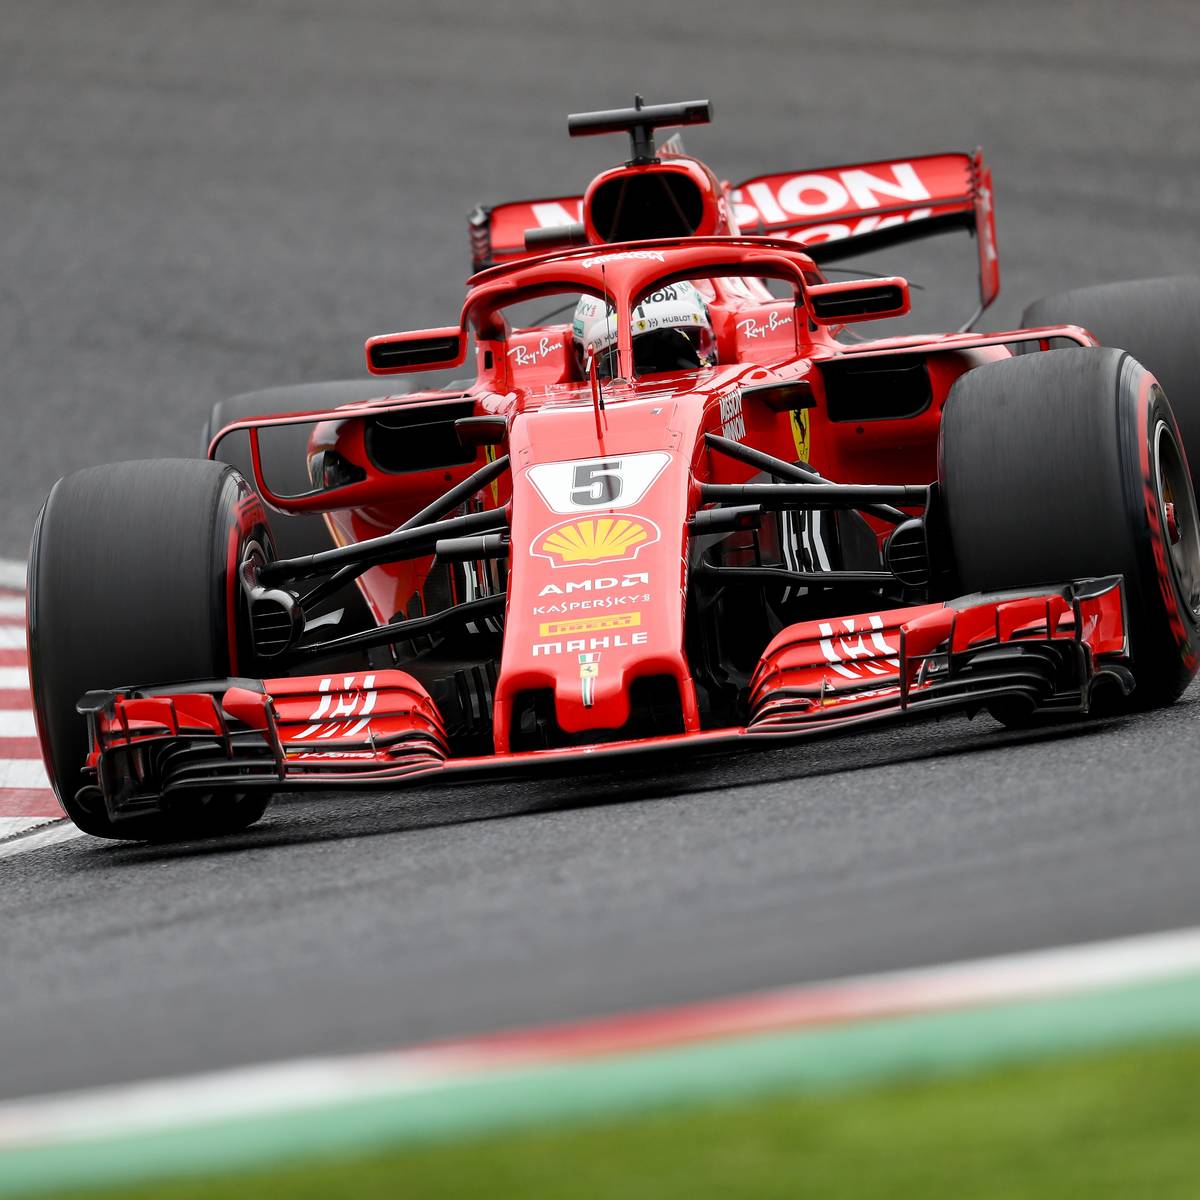 Formel 1, Suzuka Rennen mit Vettel, Hamilton LIVE im TV, Stream, Ticker